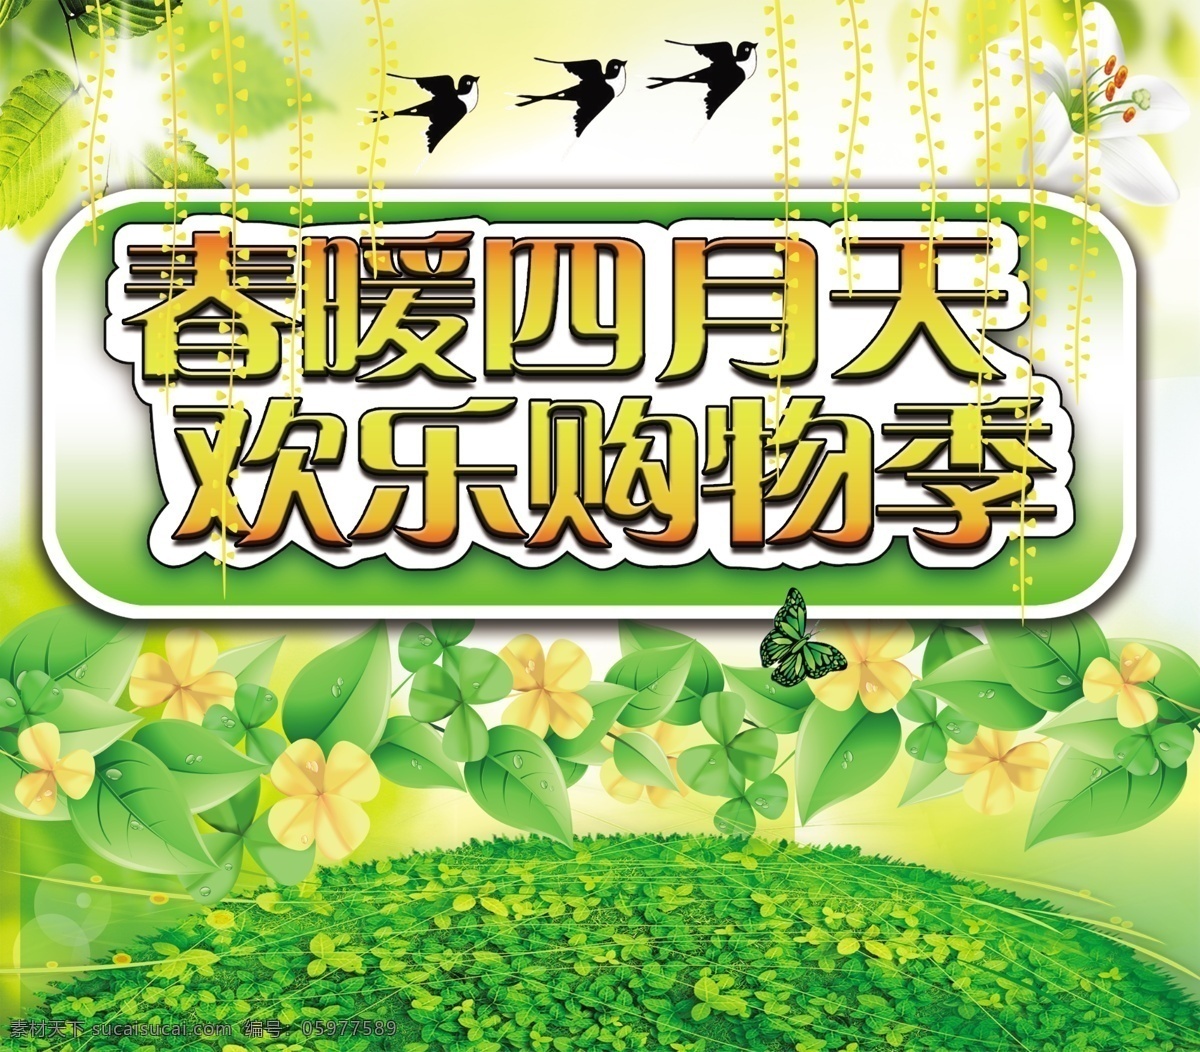 春 暖 四月 天 绿地 燕子 阳光 原创设计 原创海报